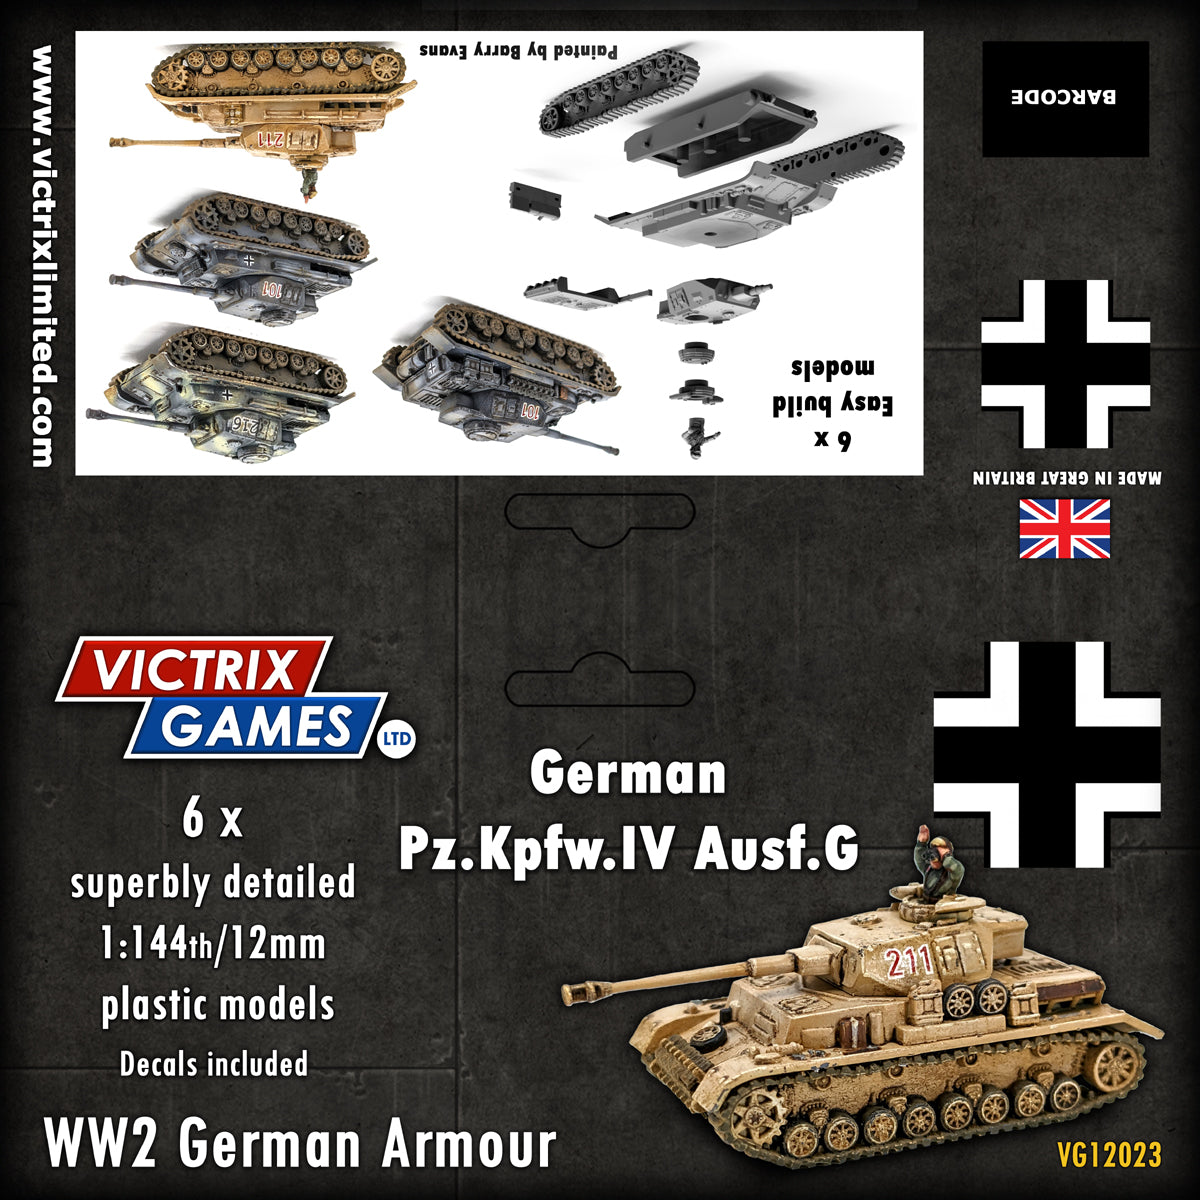 Panzer IV F